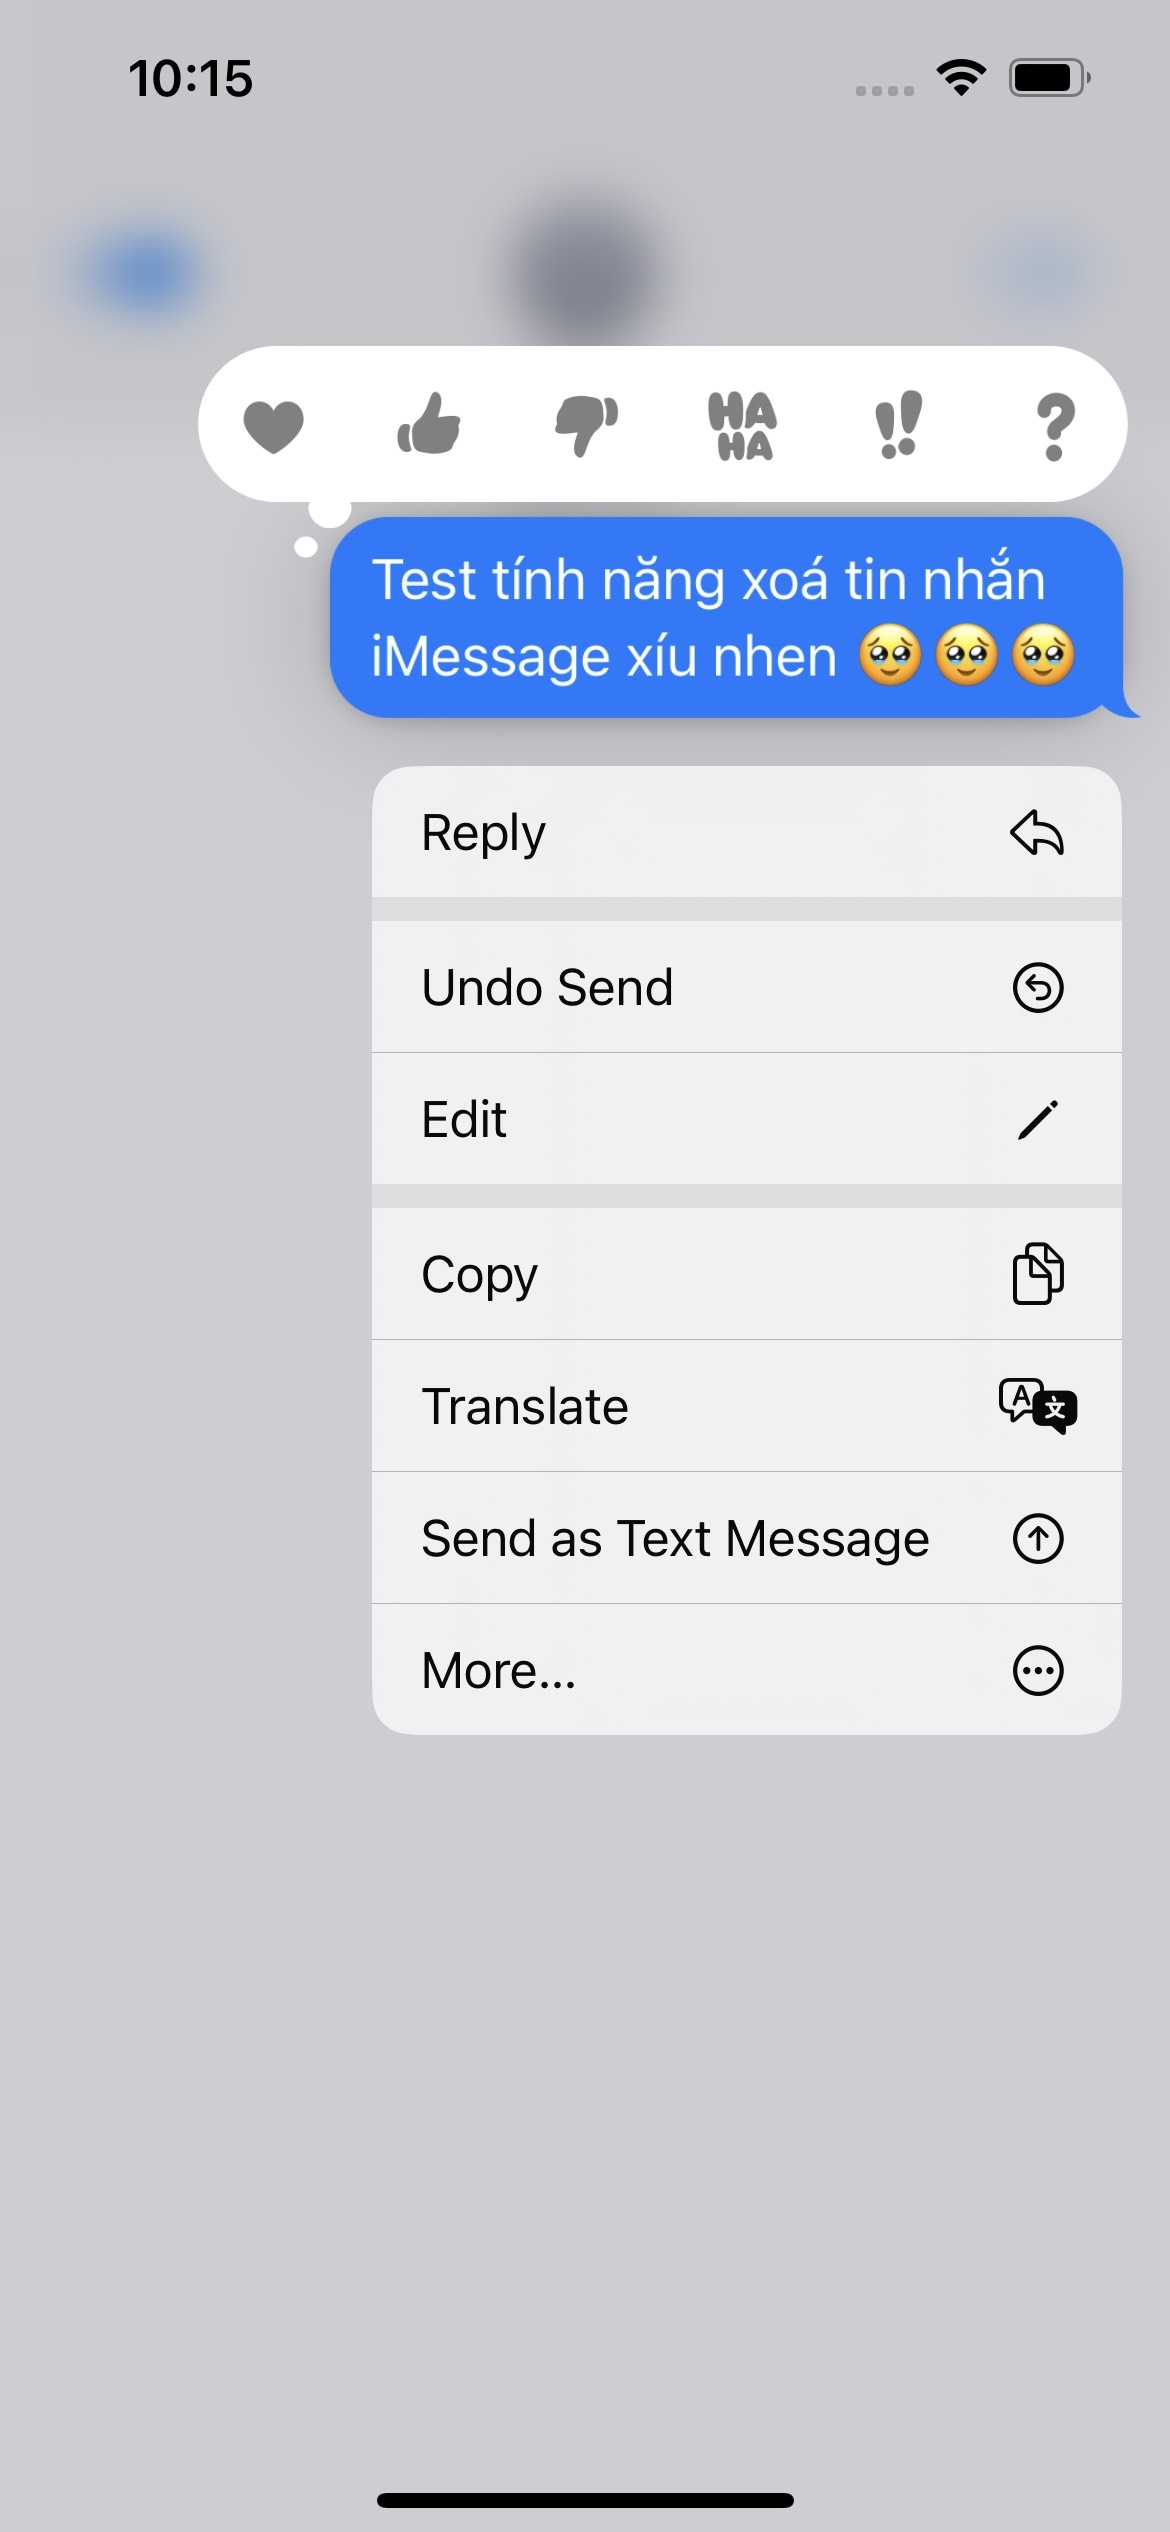 Hướng dẫn cách xóa và sửa tin nhắn iMessage trên iPhone cực hay mà ai cũng nên biết